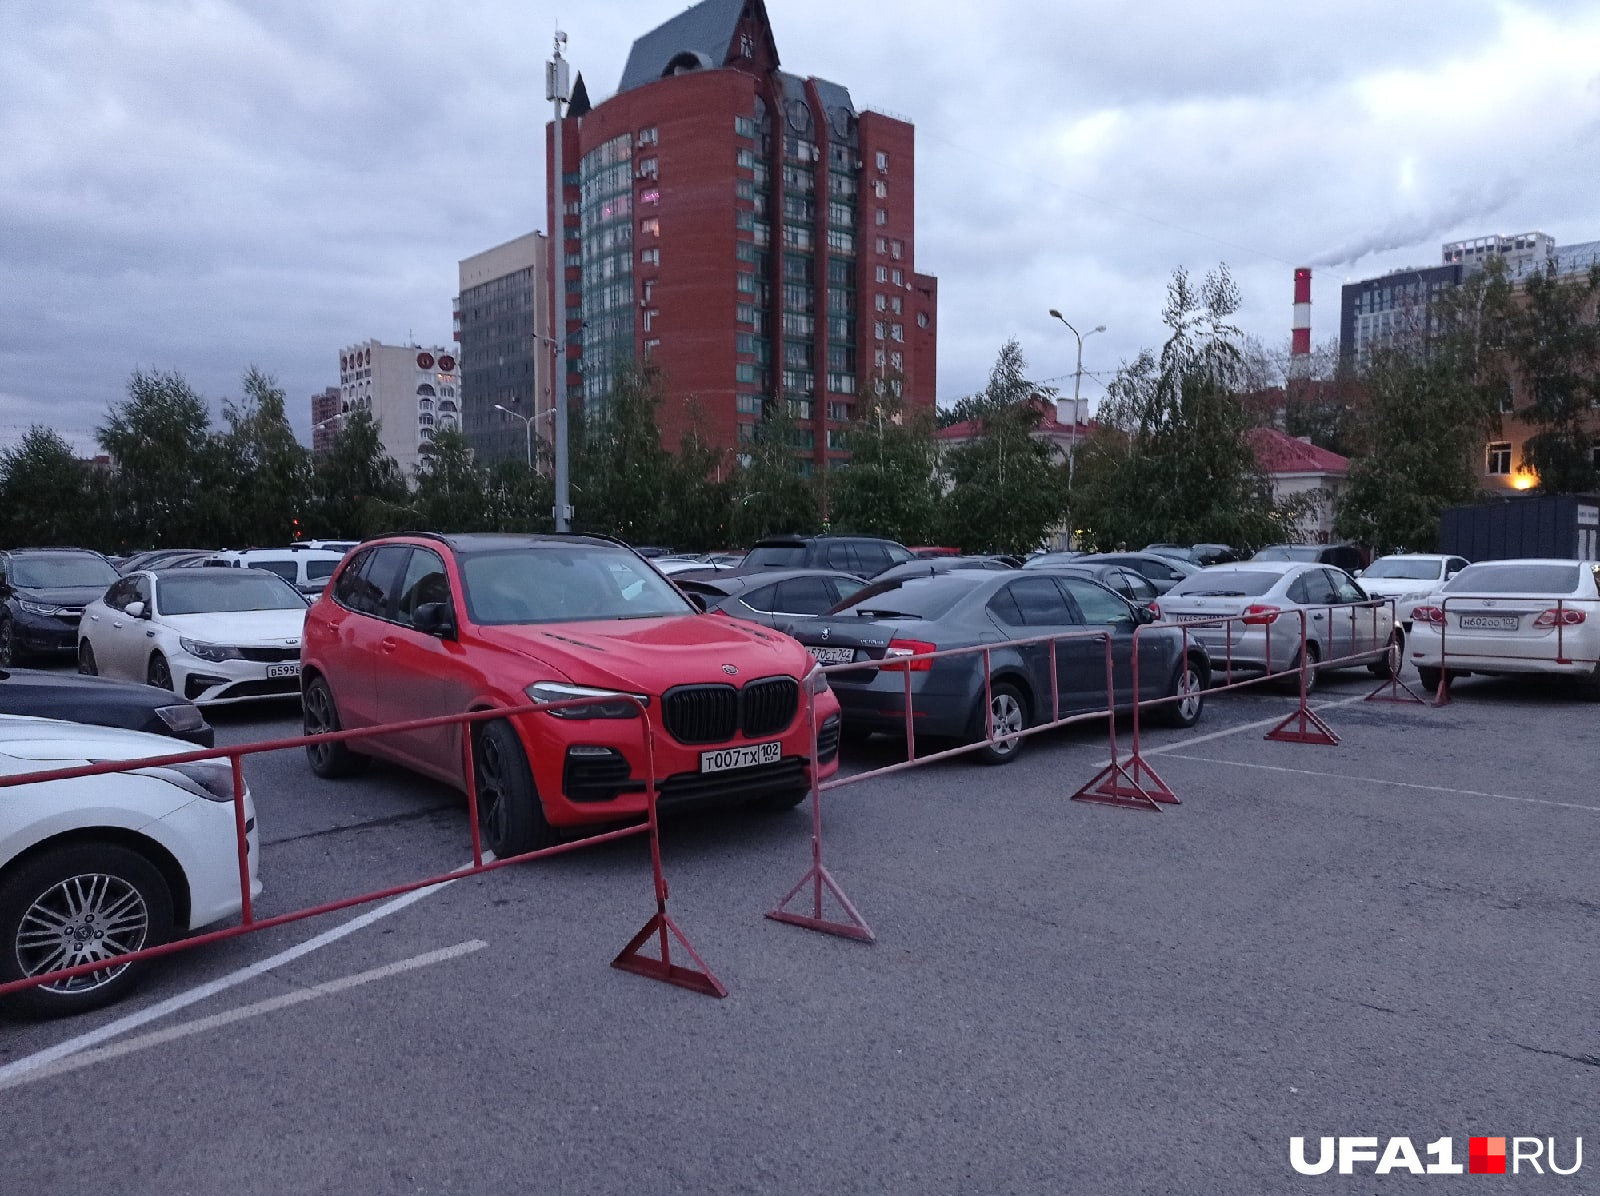 Красная BMW стояла тоже недалеко от Арены, но на парковке с остальными «блатными» авто ей места почему-то не хватило. А может, водителю оно и не нужно было. Главное — за своих поболеть